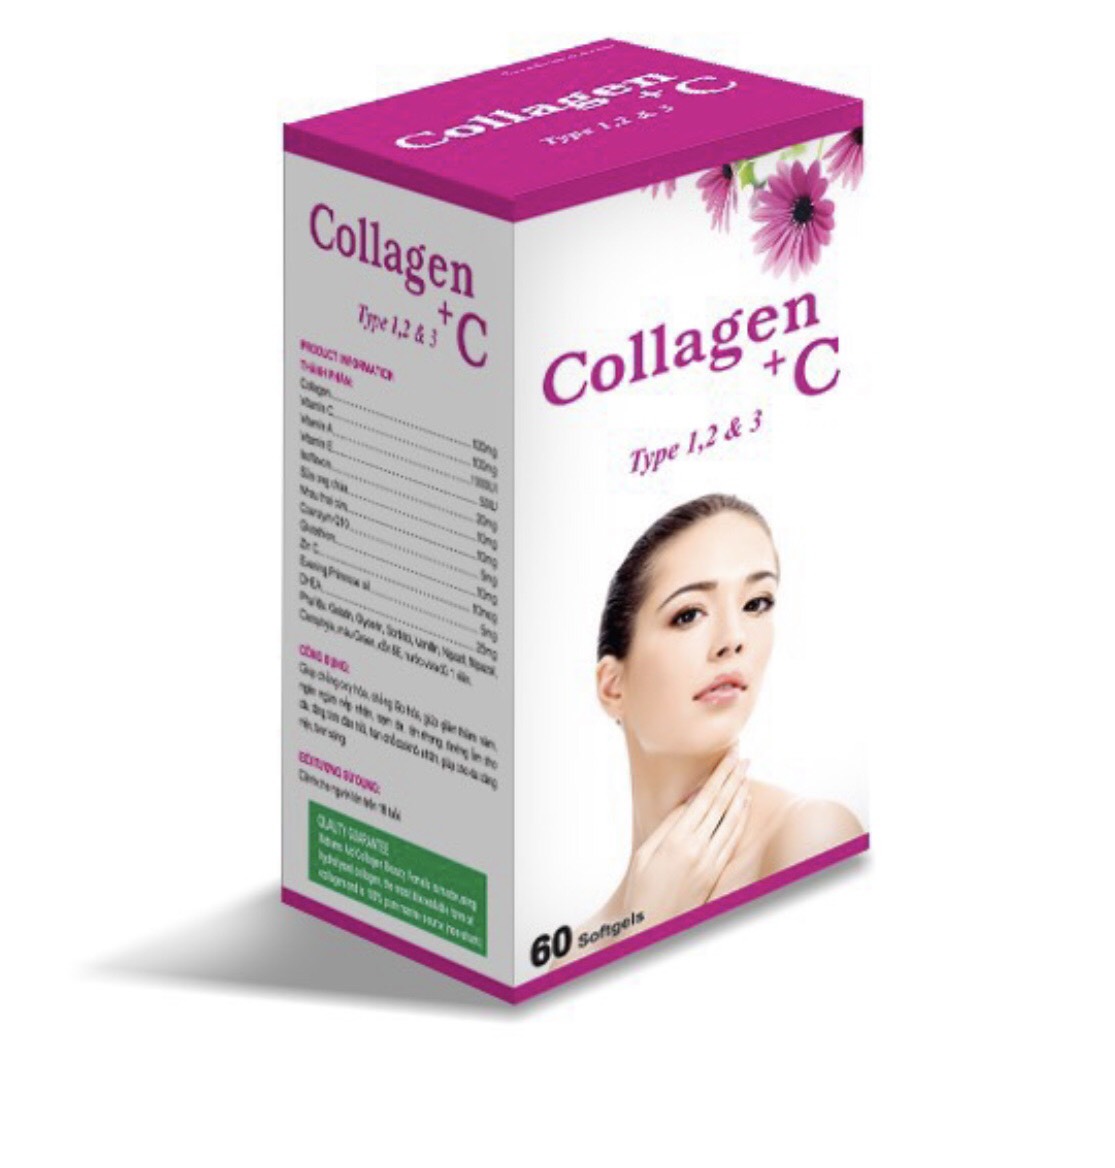 Viên Uống Trắng Da Collagen +C Type 1, 2 & 3 - Chống Lão Hóa Da thumbnail